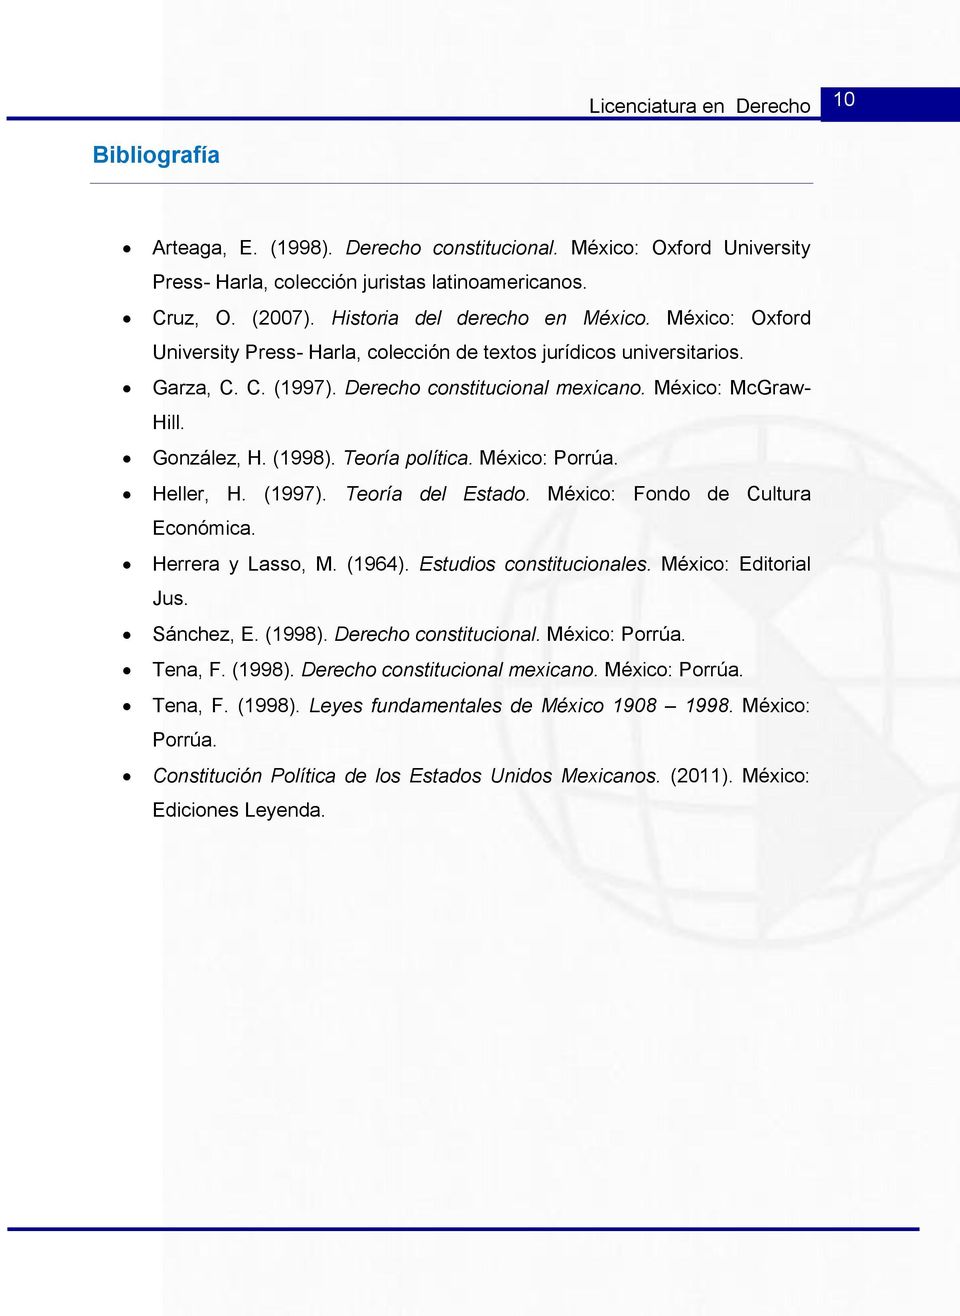 González, H. (1998). Teoría política. México: Porrúa. Heller, H. (1997). Teoría del Estado. México: Fondo de Cultura Económica. Herrera y Lasso, M. (1964). Estudios constitucionales.